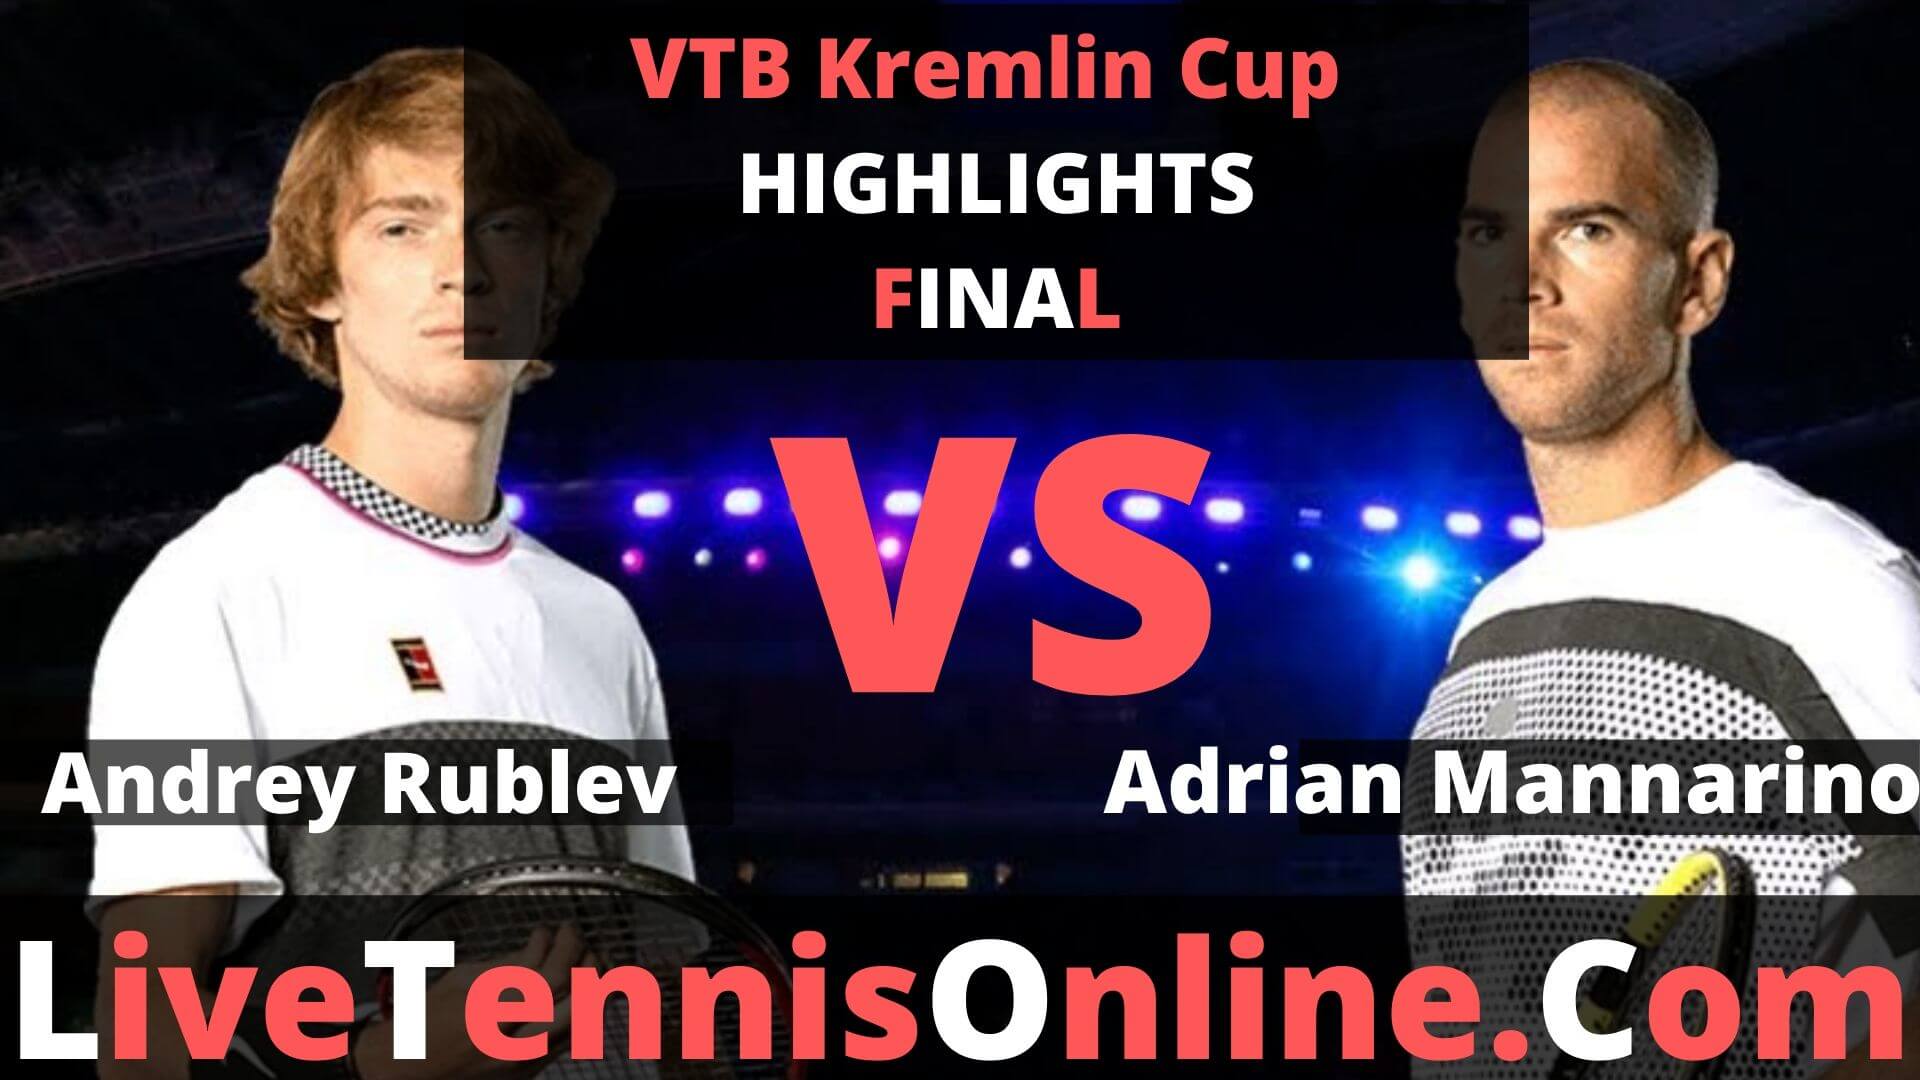 Andrey Rublev Vs Adrian Mannarino Highlights 2019 VTB Kremlin Cup Final